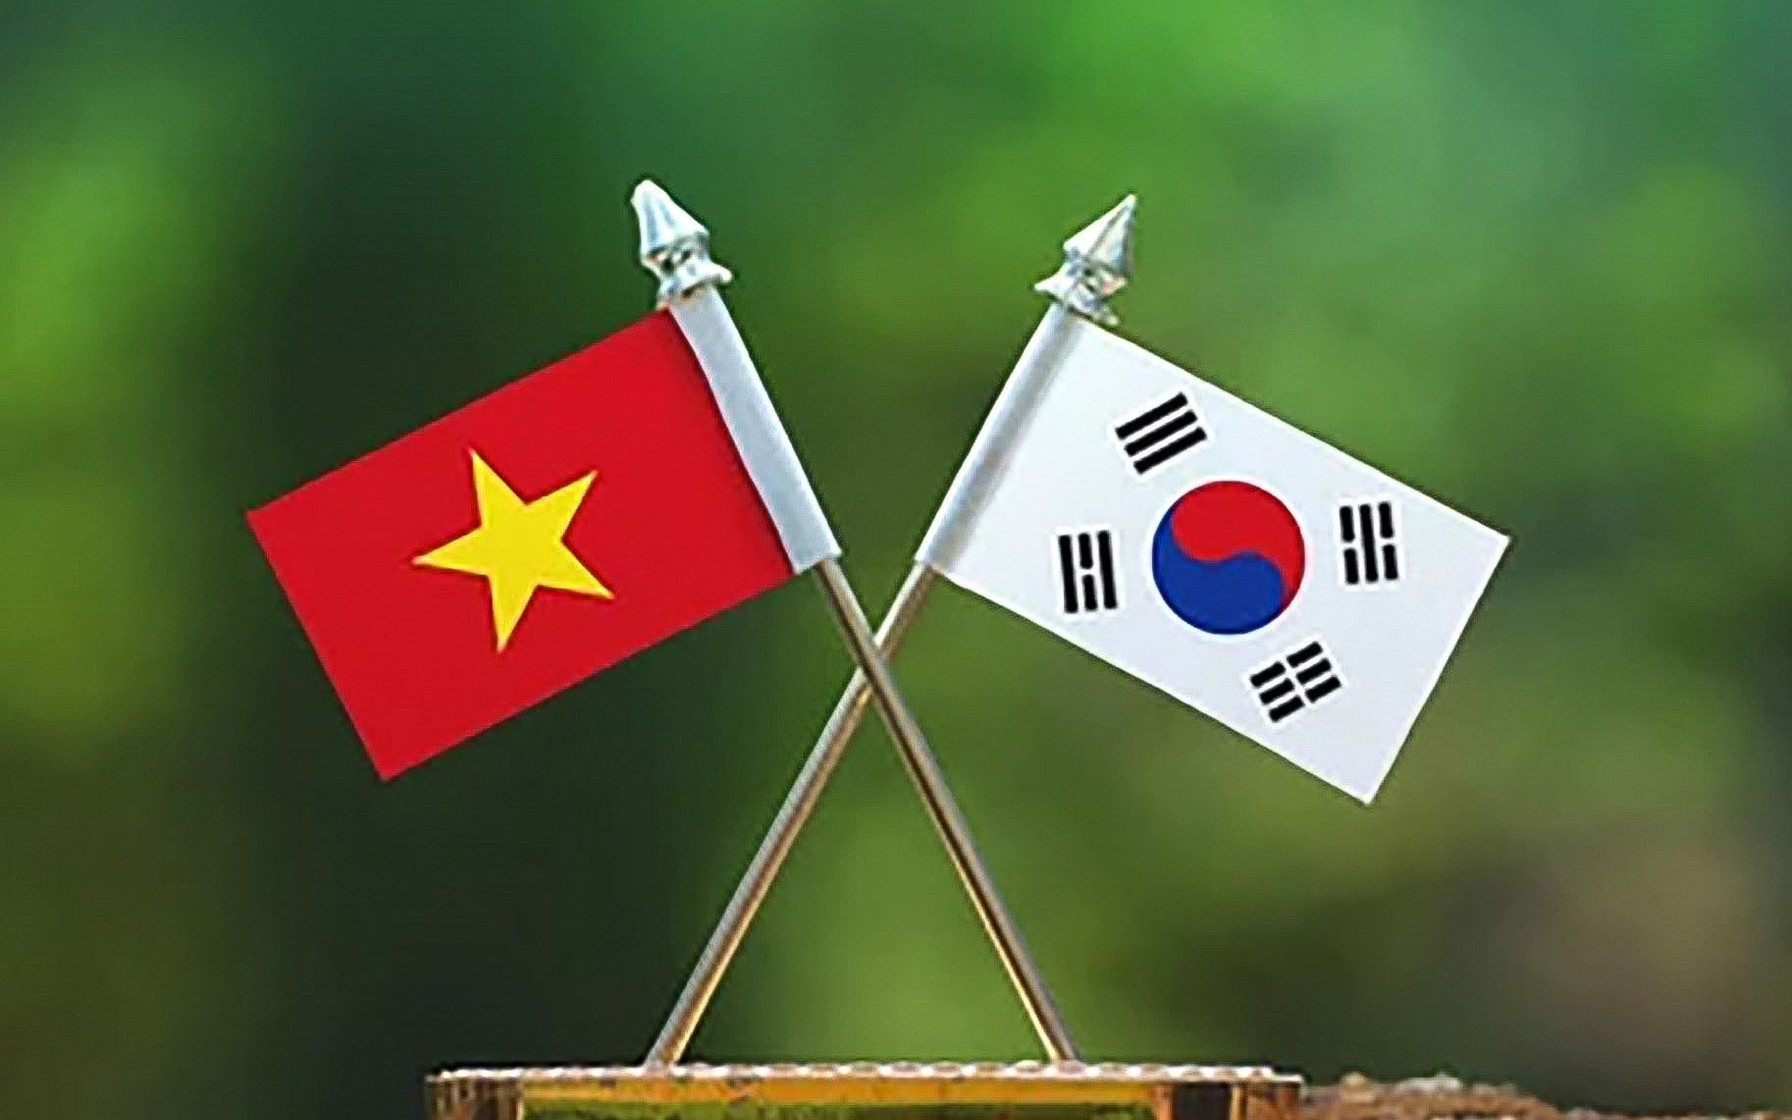 Mối quan hệ Việt Nam-Hàn Quốc sẽ ngày càng được củng cố và phát triển trong những năm tới. Với sự hợp tác và tương trợ giữa hai nước, chúng ta sẽ cùng nhau chia sẻ những giá trị đẹp về văn hóa, kinh tế và xã hội. Những hình ảnh về mối quan hệ này sẽ mang lại niềm tin và hy vọng cho mọi người.